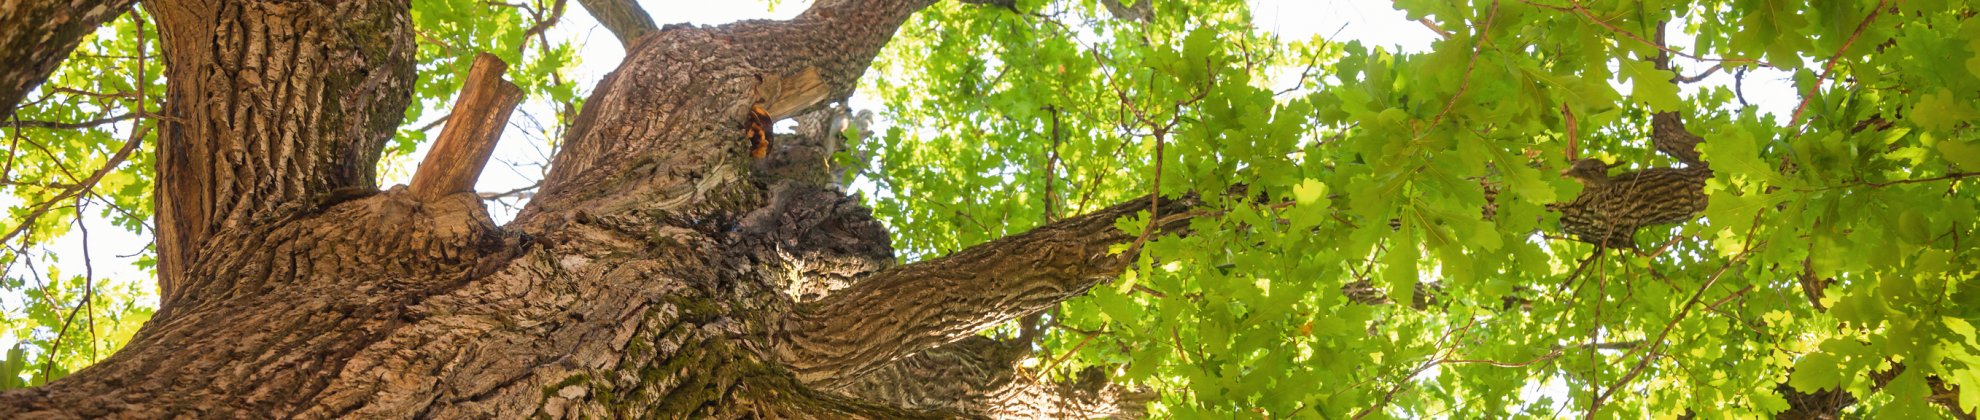 CSR Corporate Social Responsibility TourCert zertifiziert Baum Natur Nachhaltigkeit nachhaltig